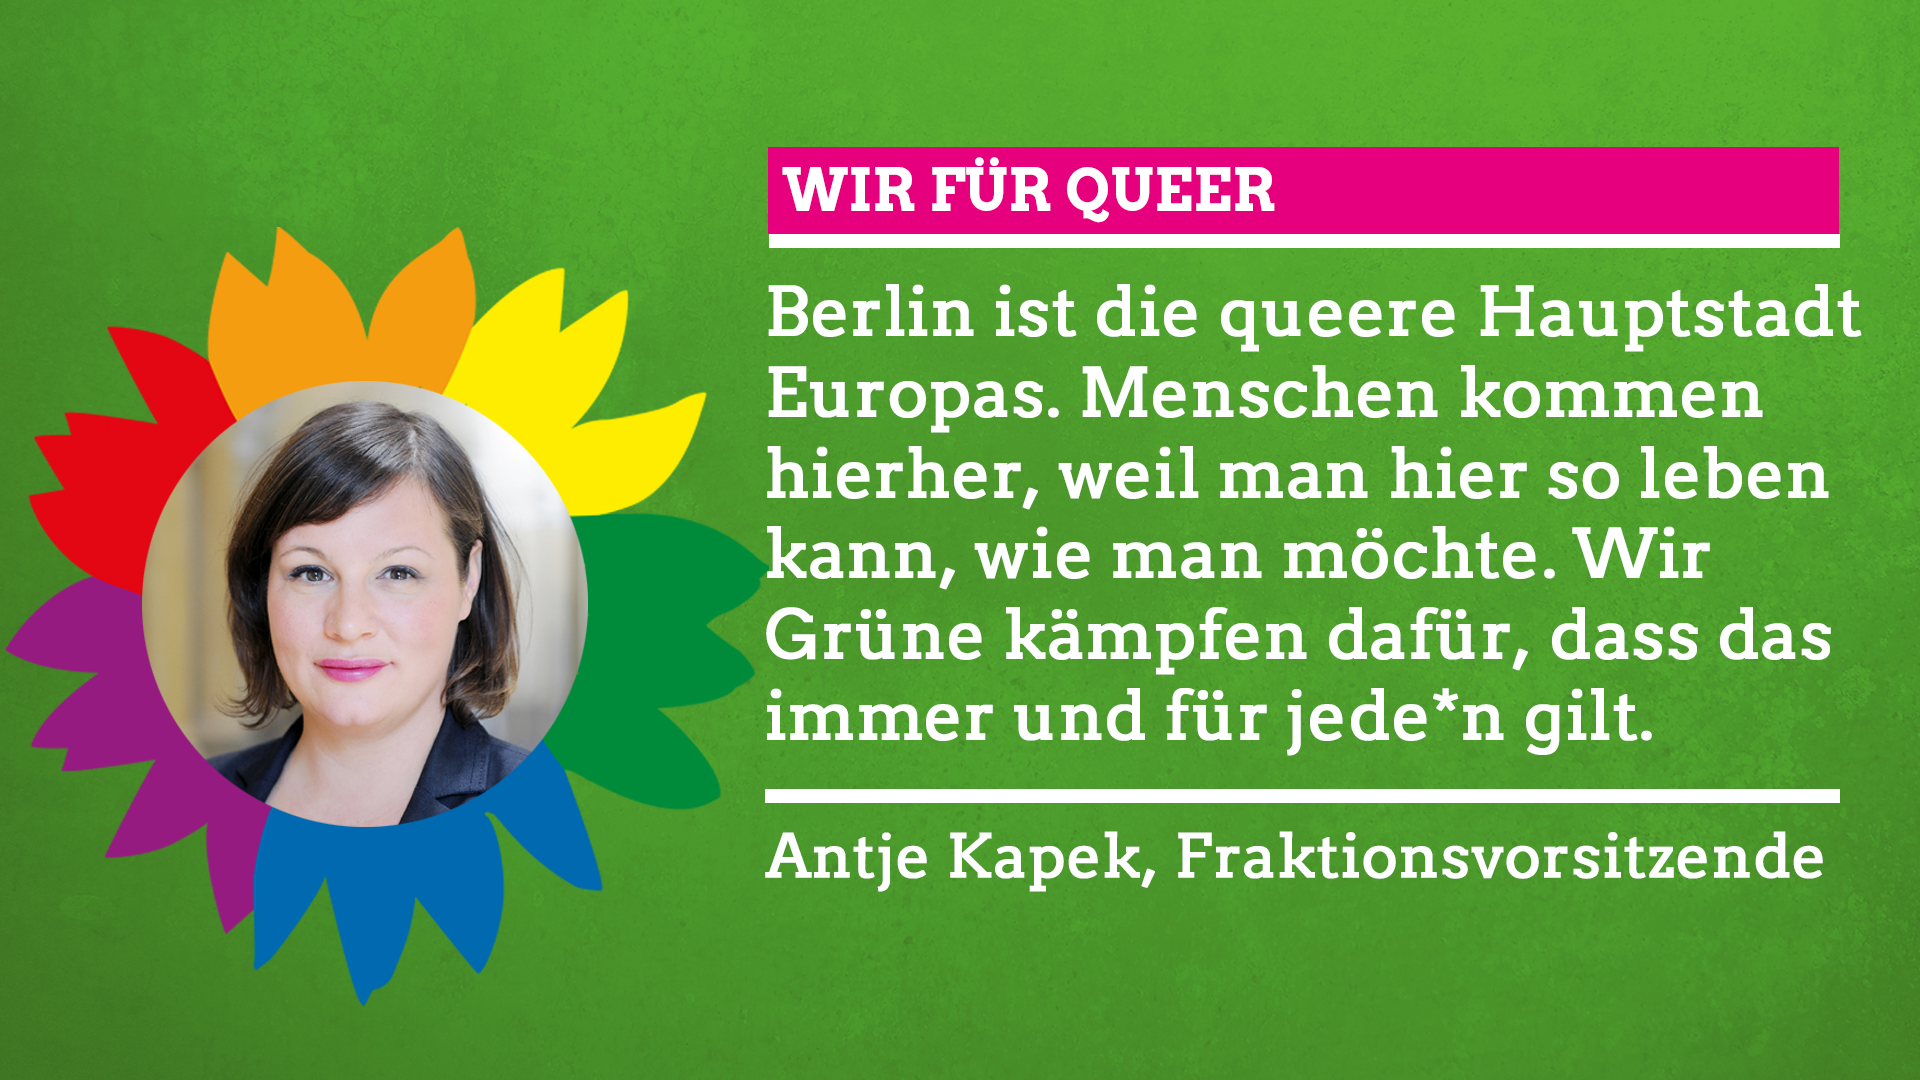 Antje Kapek sagt im Rahmen unserer Grünen Regenbogenwochen: "Wir für Queer!"